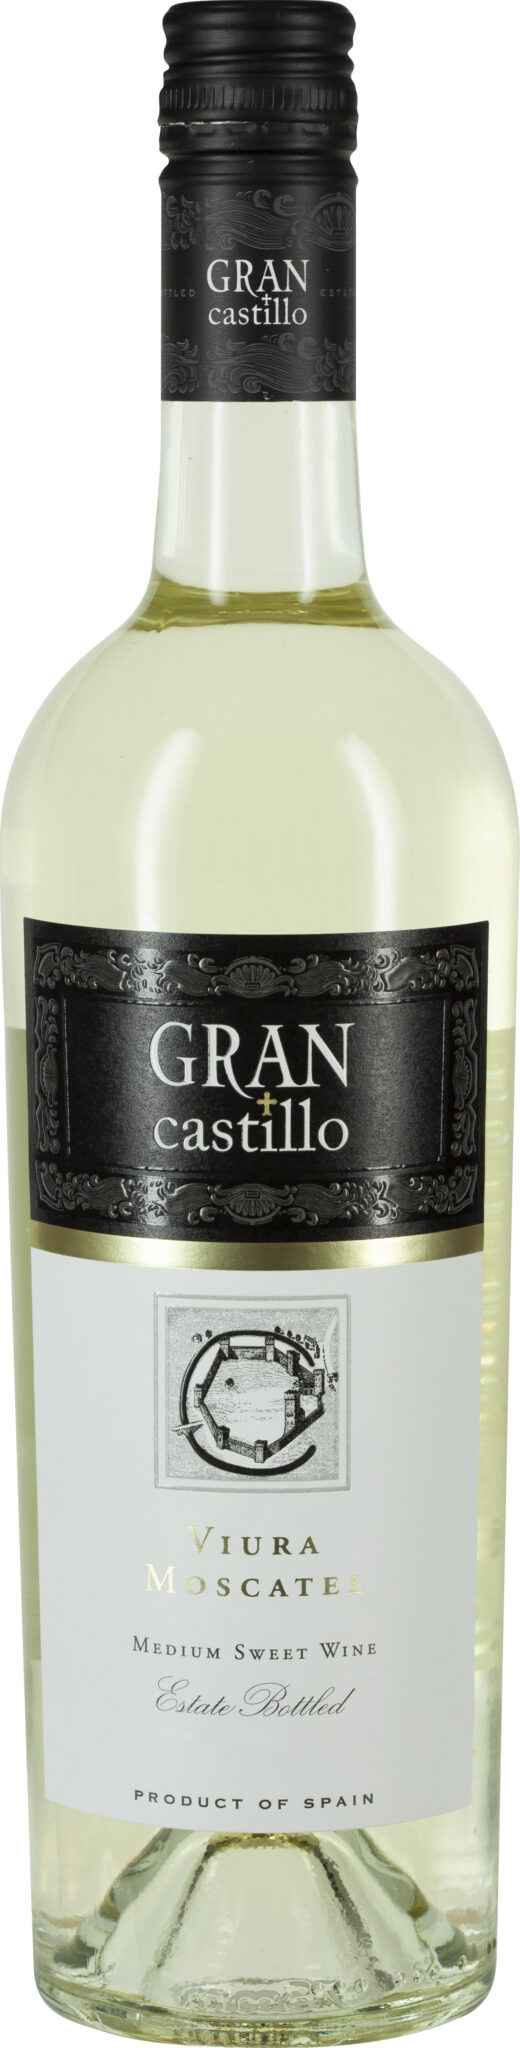 Gran Castillo, Viura Moscatel Vino Varietal